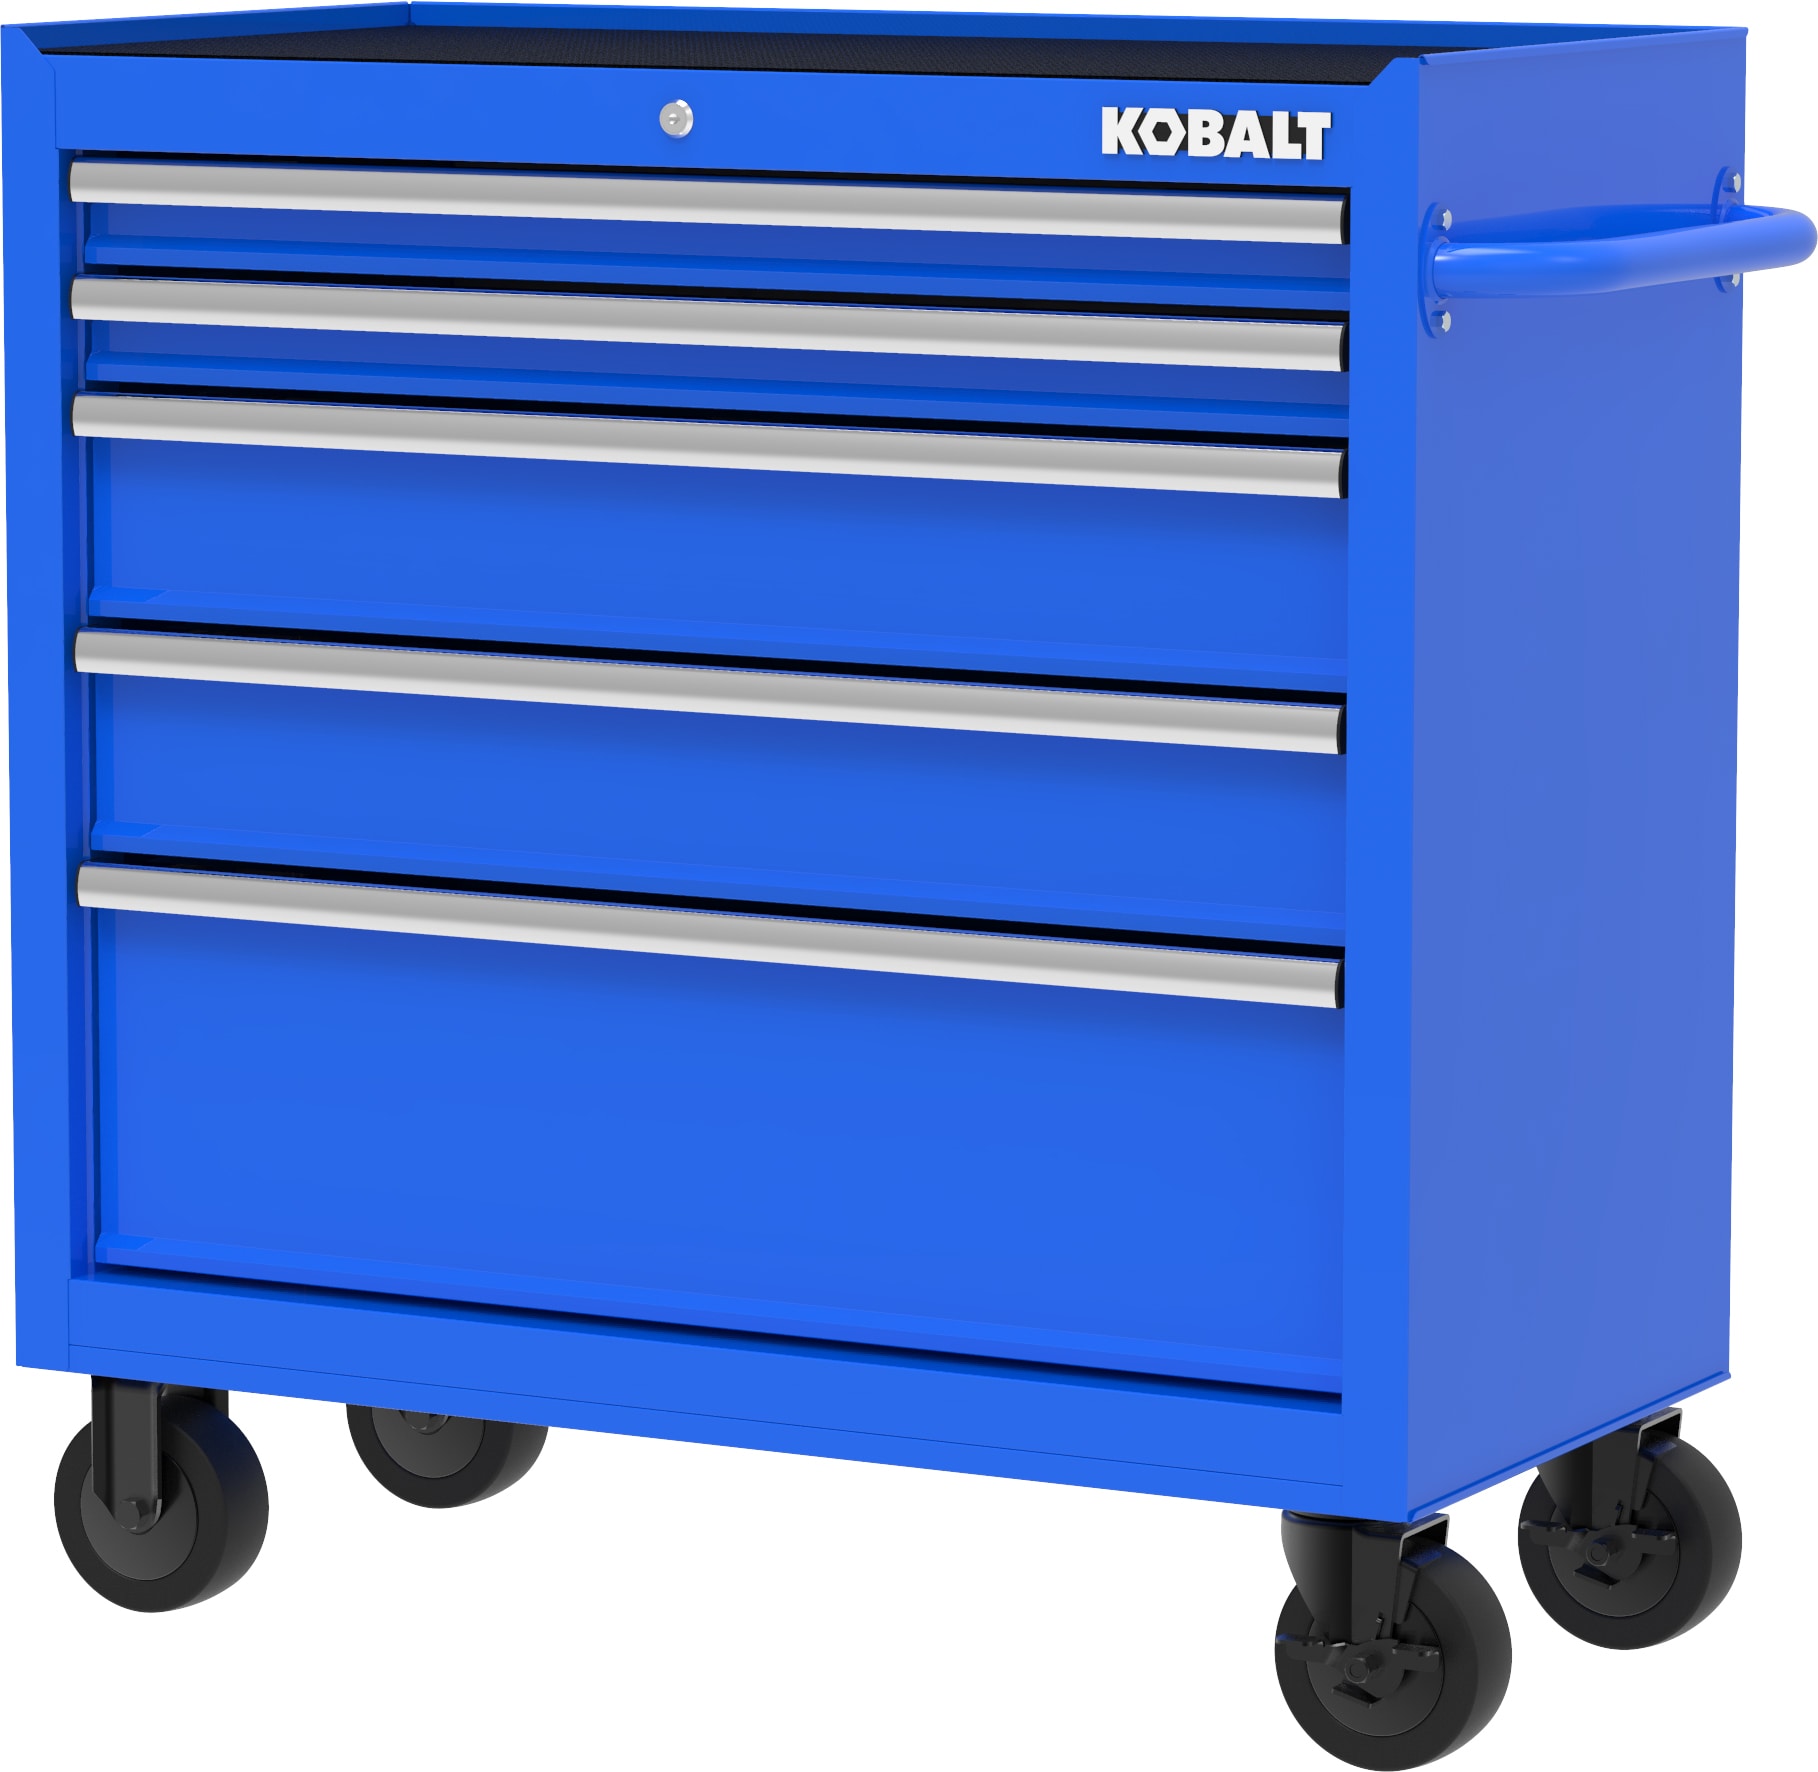 Kobalt 410-169-0131